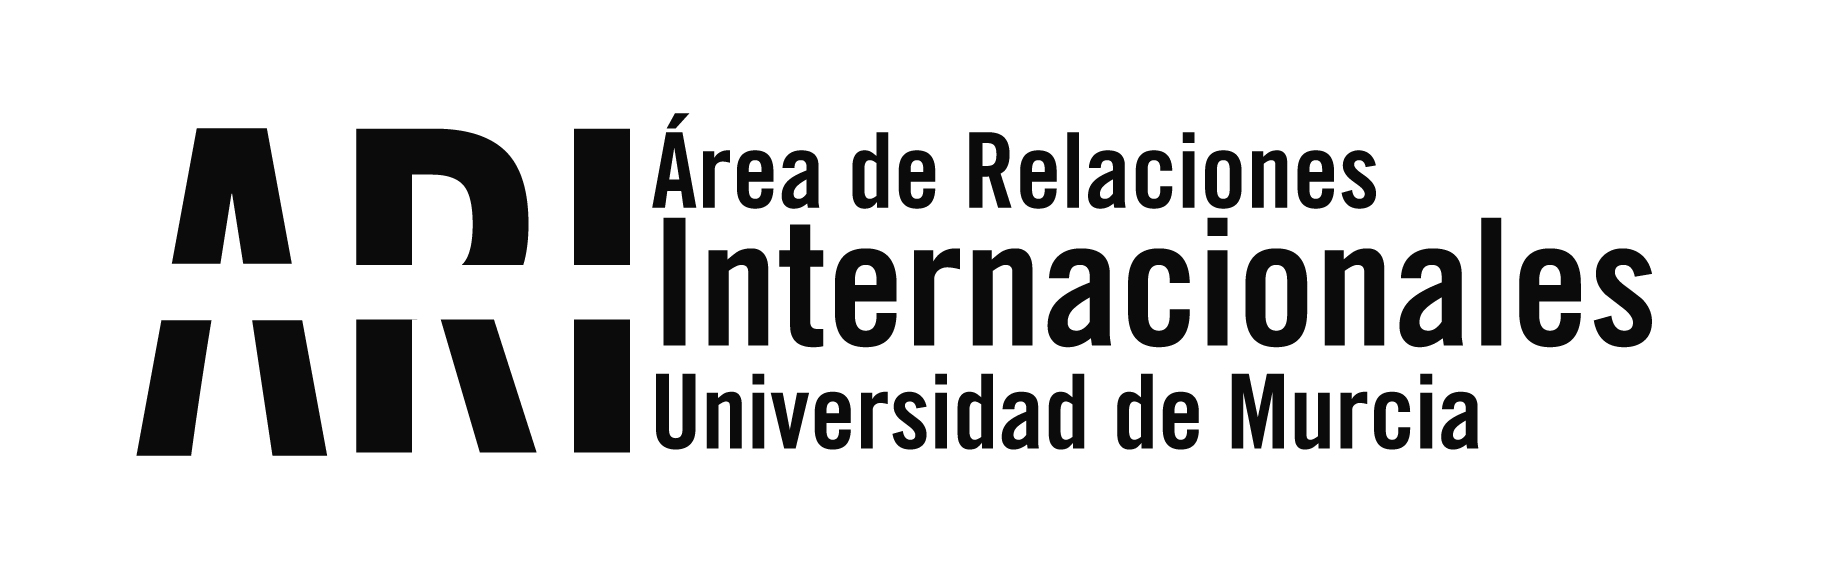 Jornadas Informativas de Movilidad Internacional en la UM - Área de Relaciones Internacionales